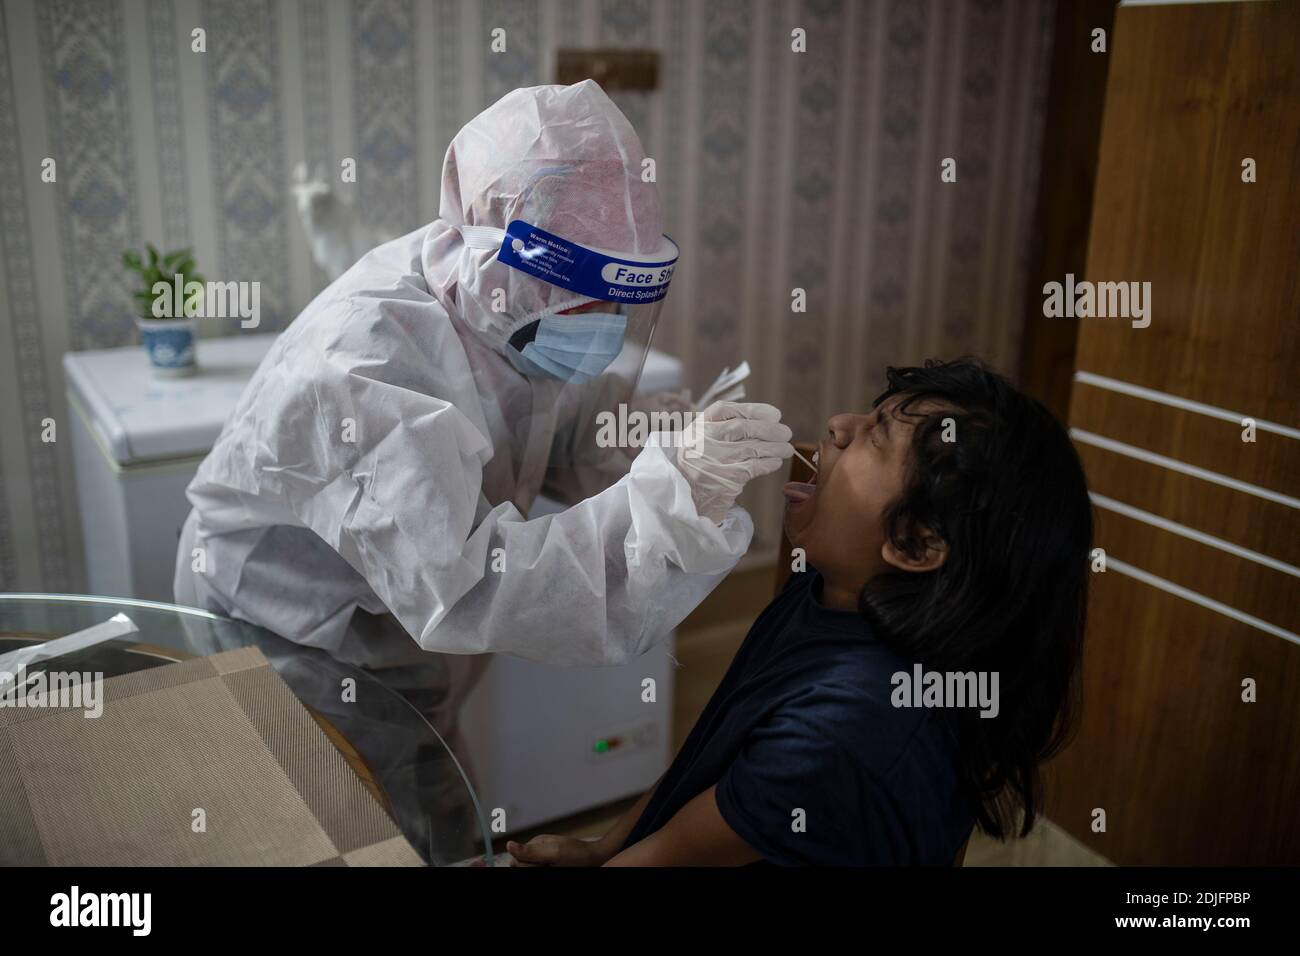 Un personnel médical recueillant un échantillon pour le test du coronavirus Covid-19 à domicile. Dhaka, Bangladesh Banque D'Images